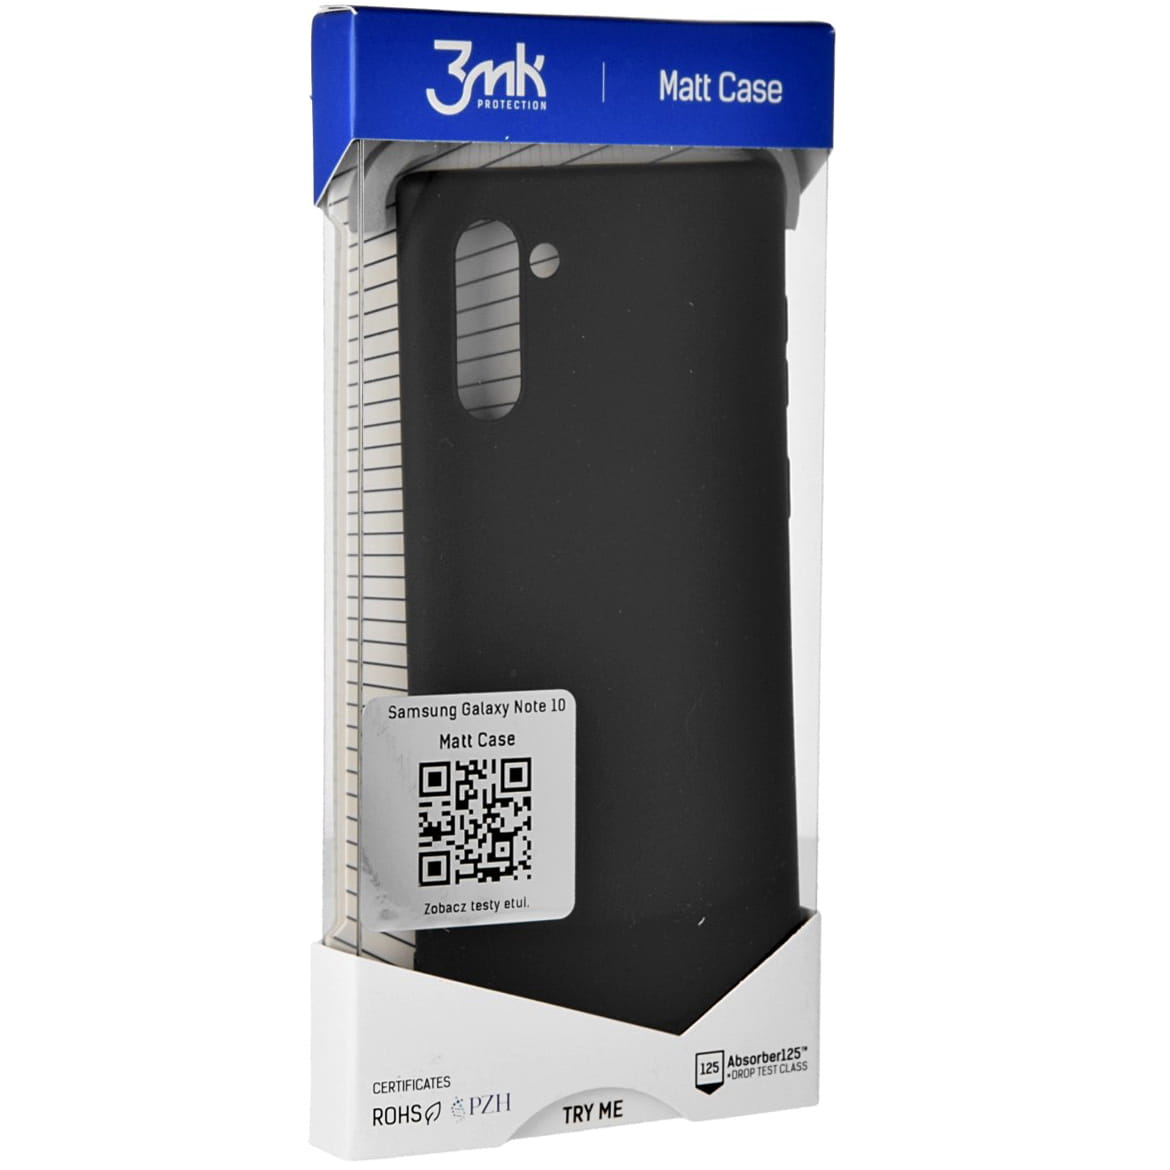 Schutzhülle 3mk aus der Serie Matt Case für Galaxy Note 10, schwarz